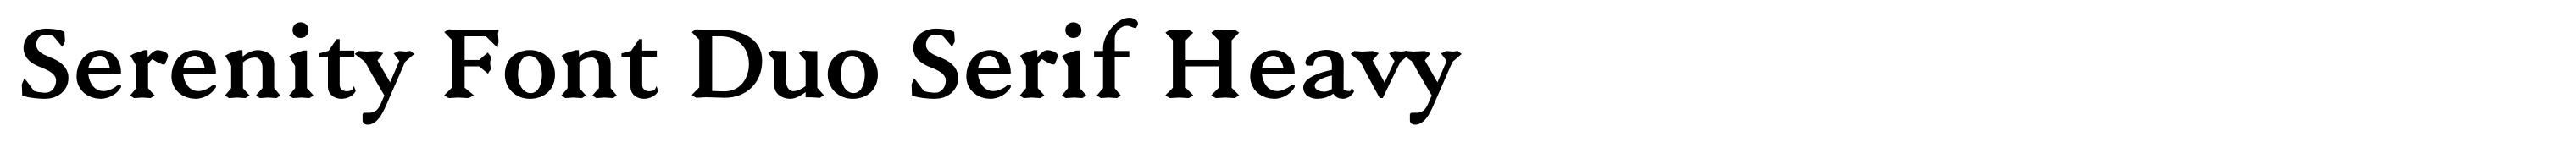 Serenity Font Duo Serif Heavy